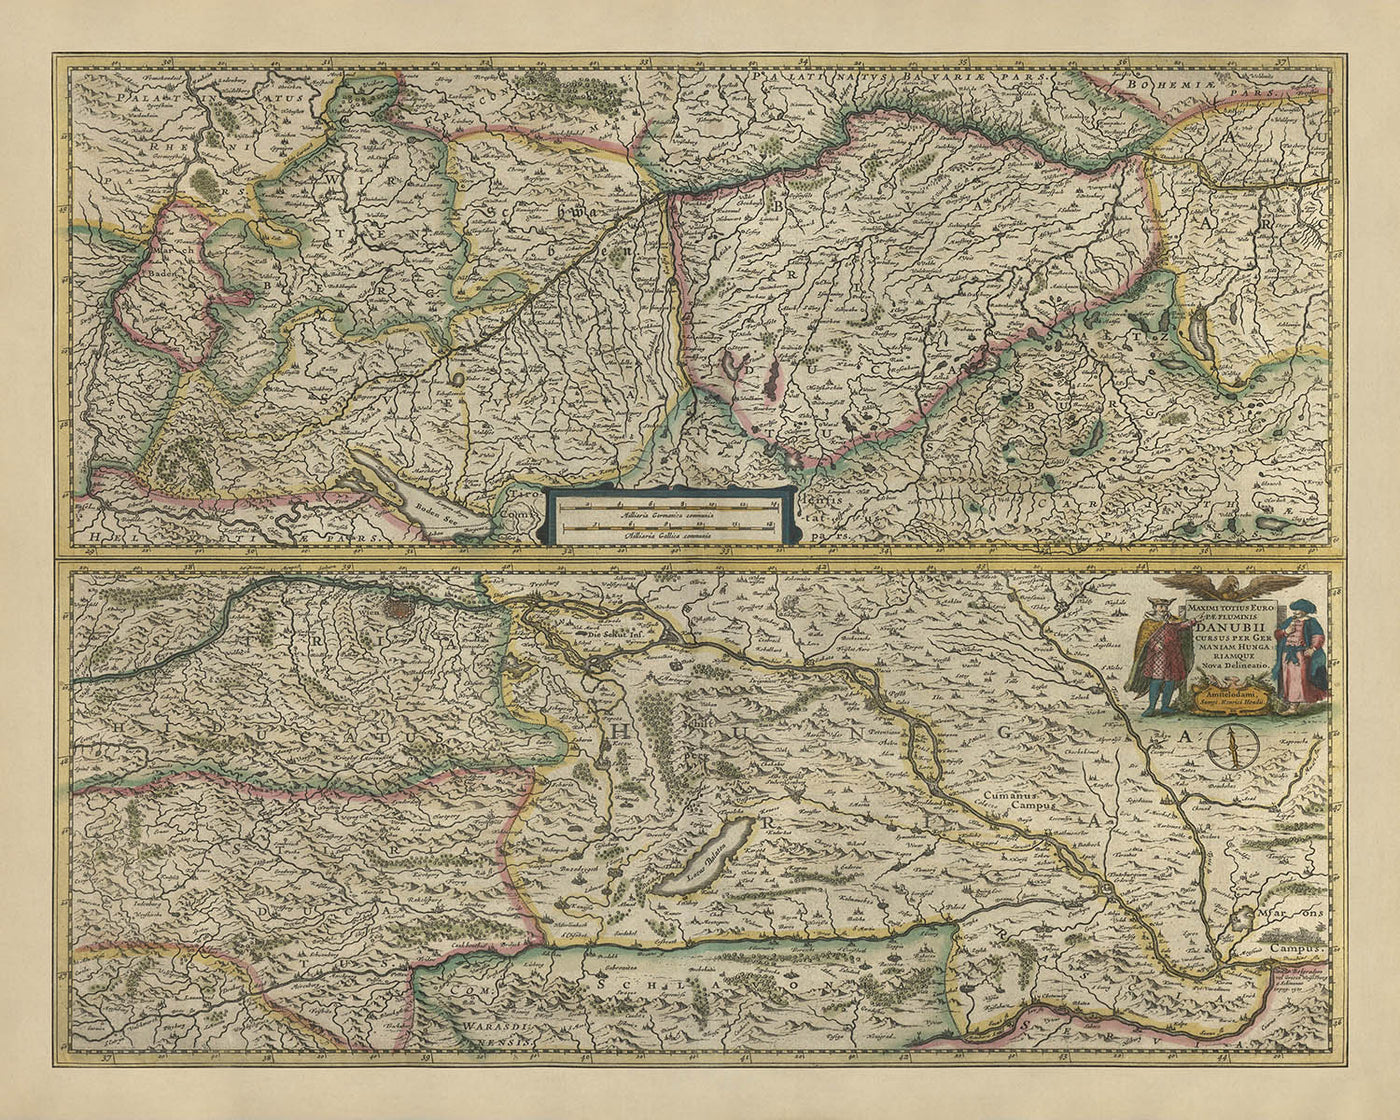 Ancienne carte de l'Europe centrale et orientale par Mercator et Hondius, 1633 : Danube, Vienne, Alpes, Forêt-Noire, Carpates